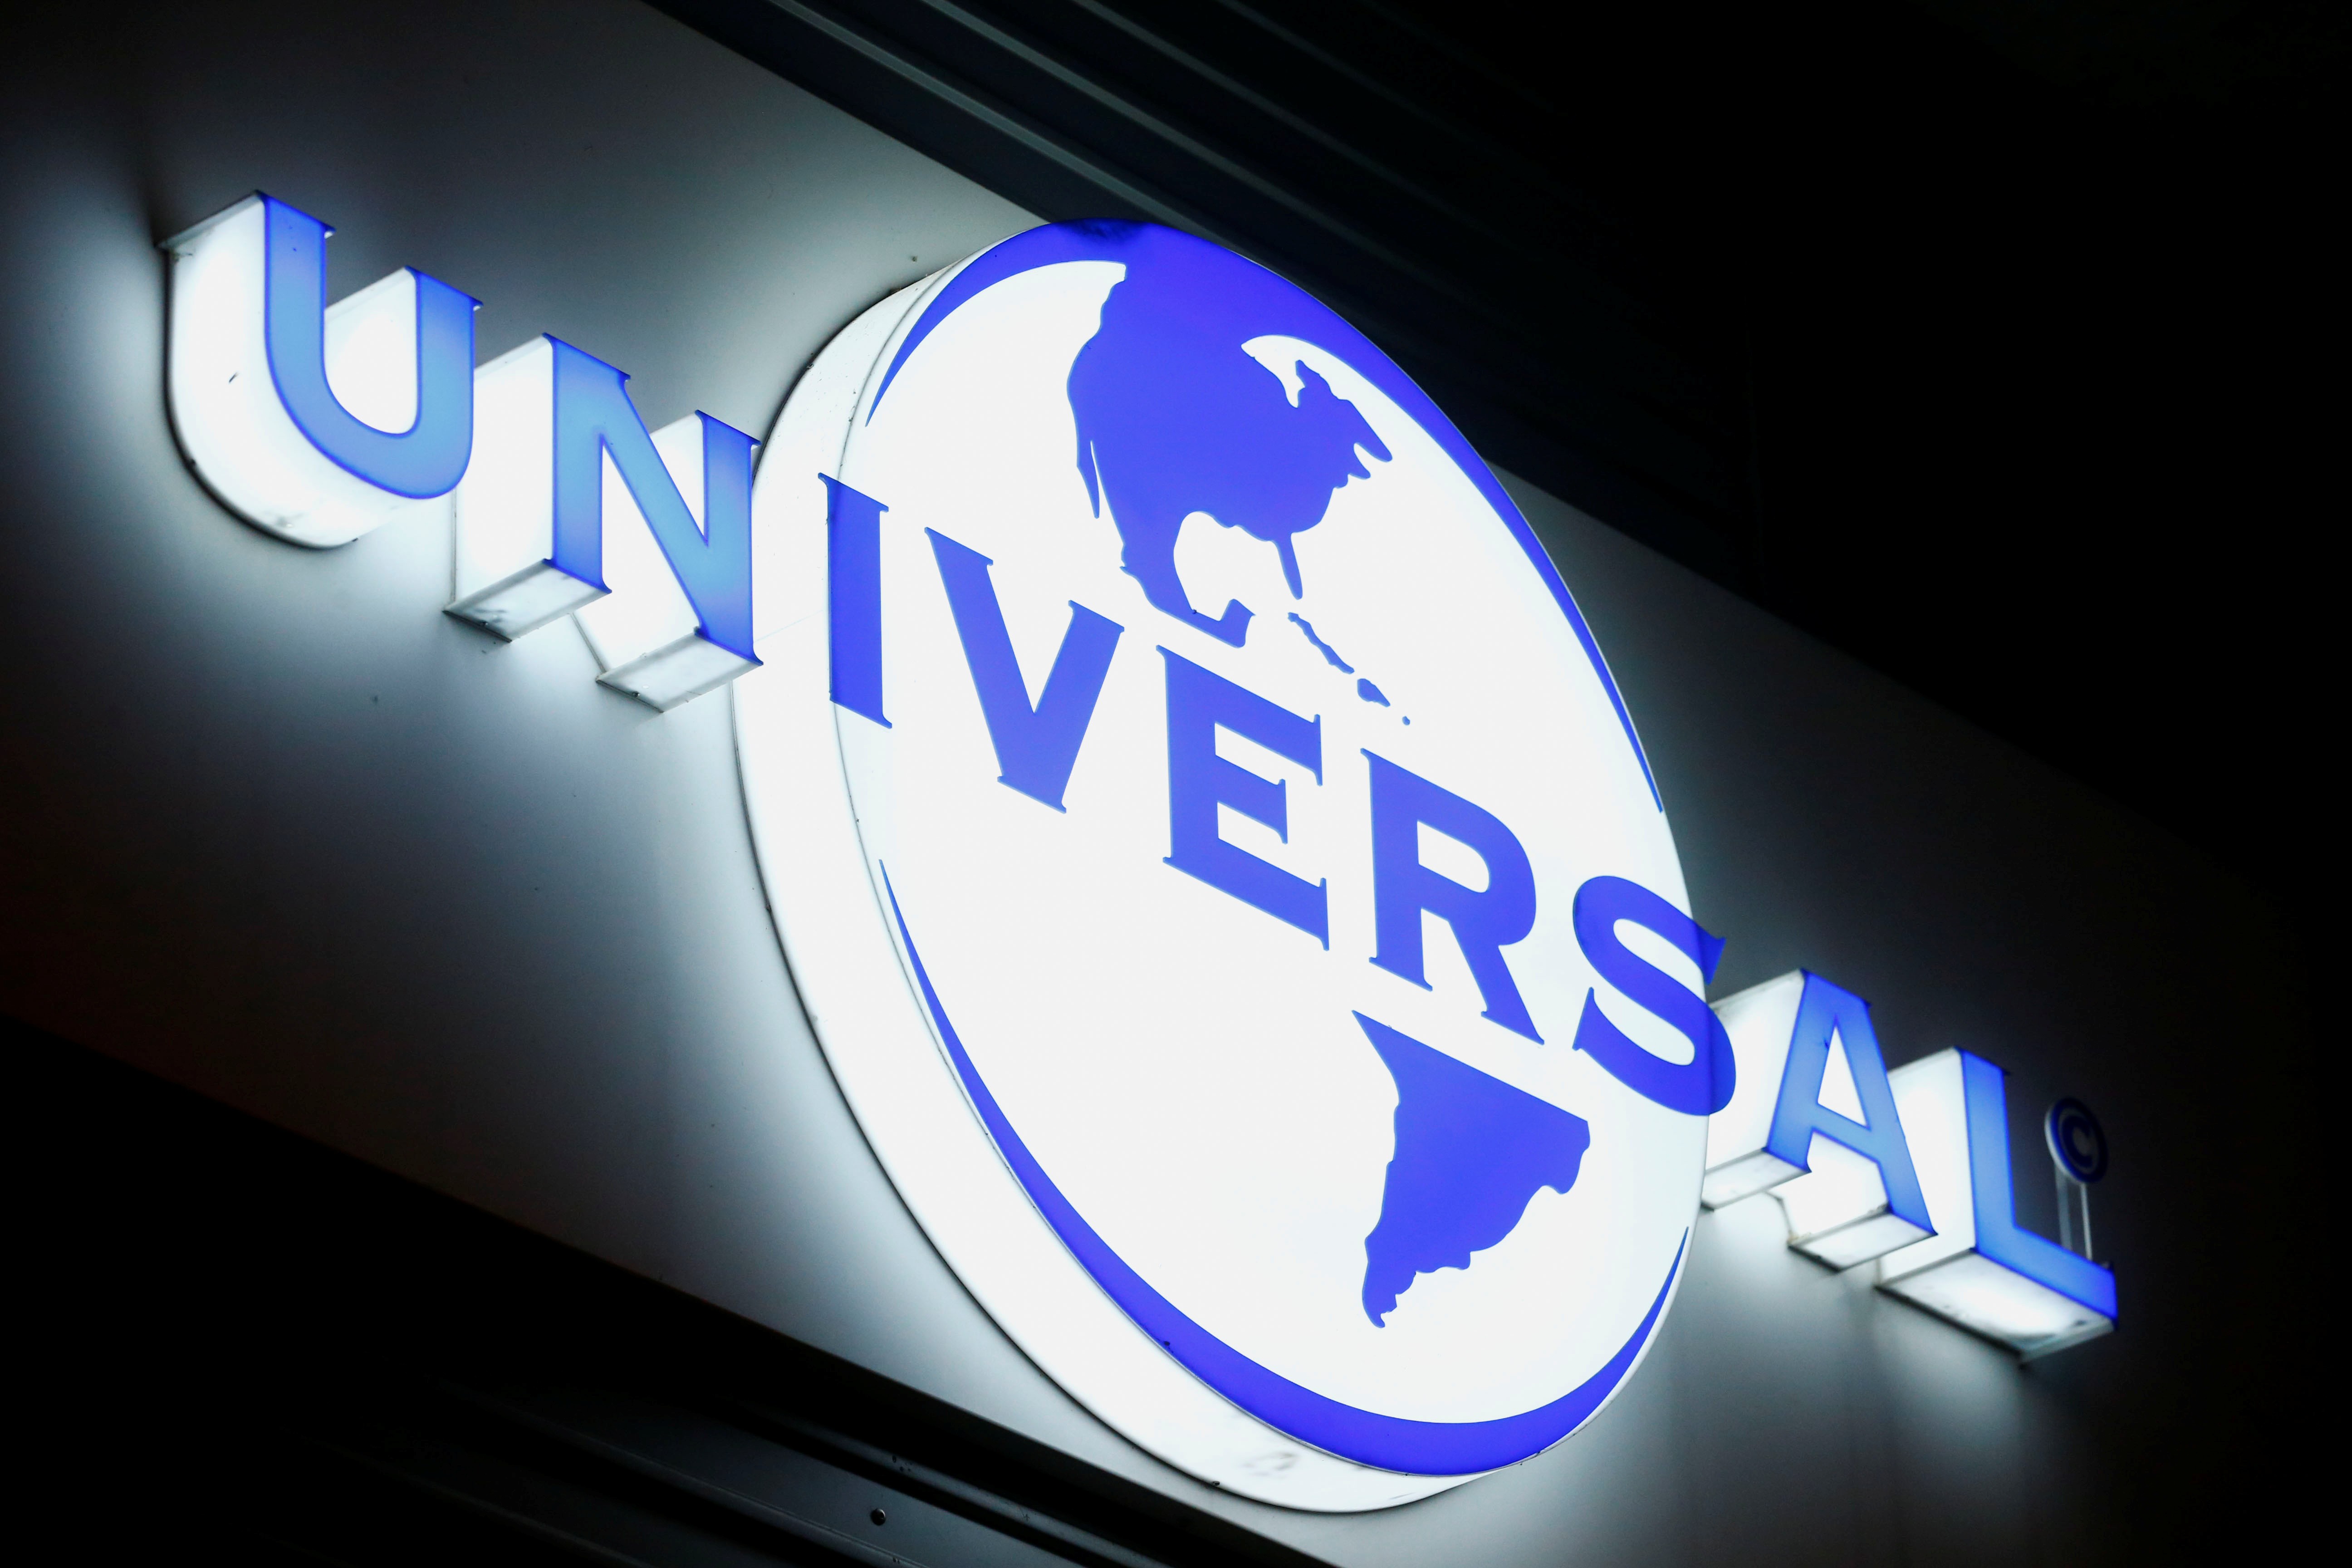 Phía Universal Music Group cho rằng cái giá được TikTok đưa ra chưa phù hợp